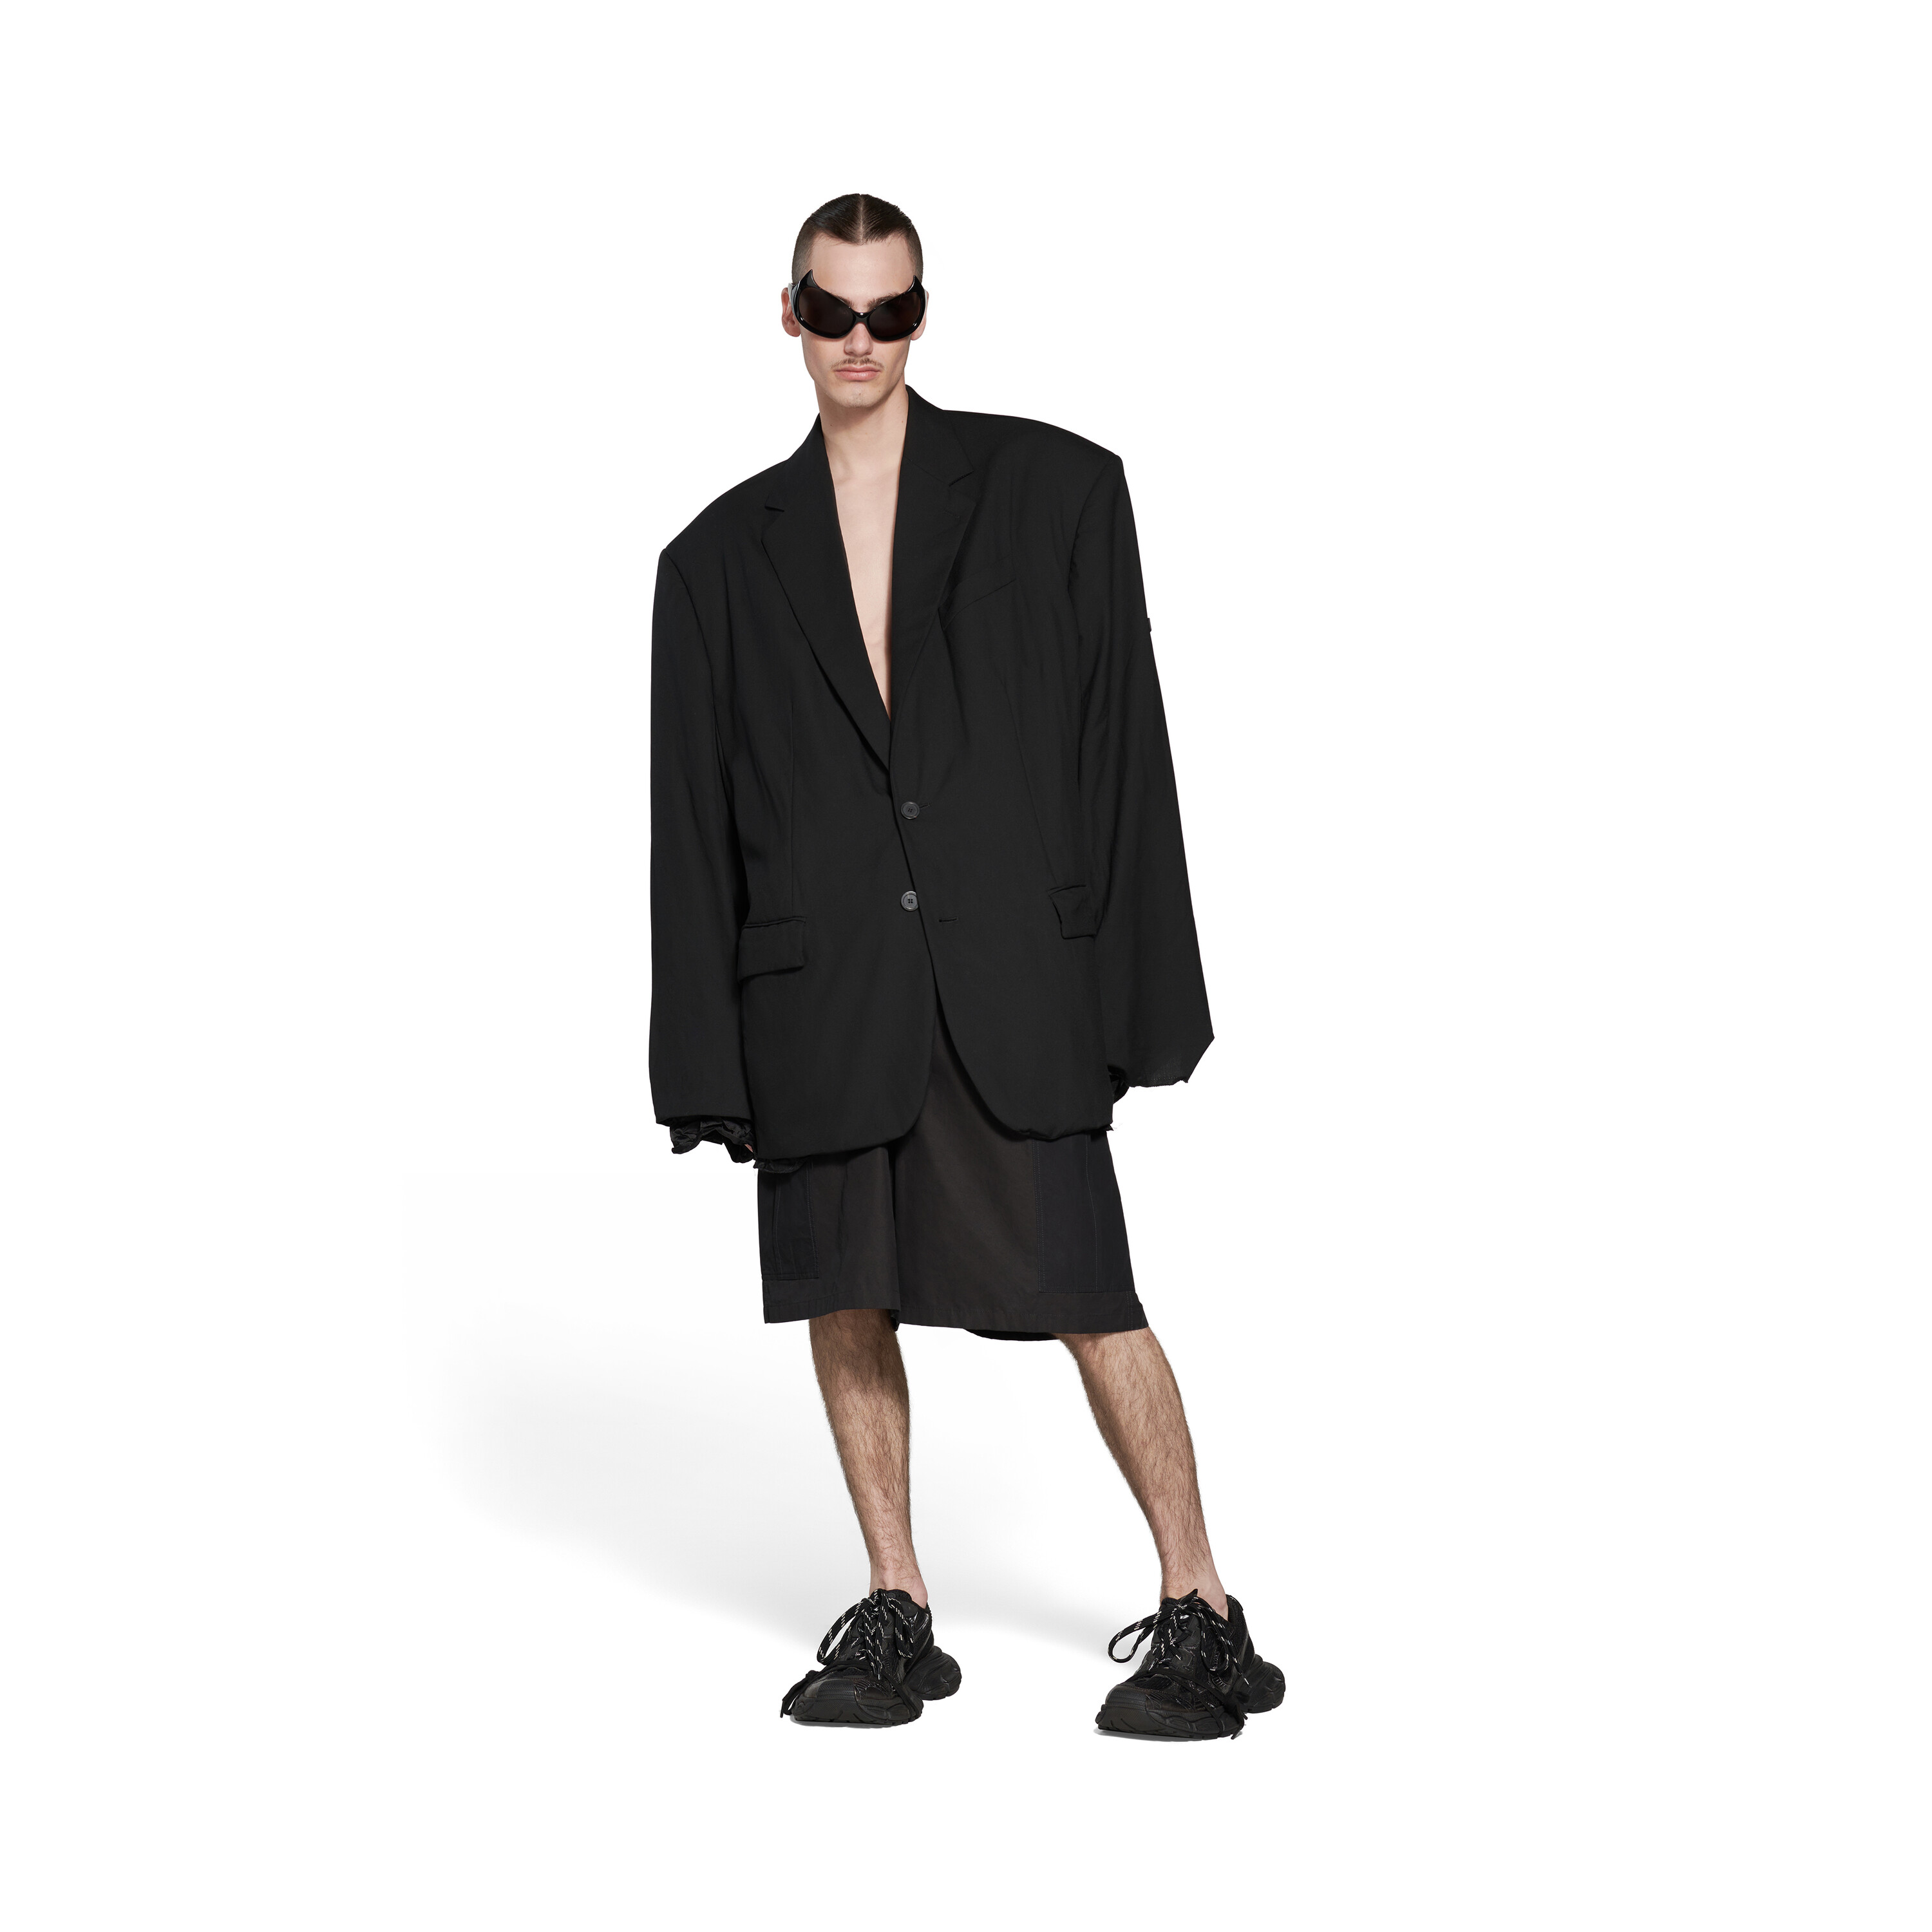 25,200円balenciaga tailored jacket 2019aw